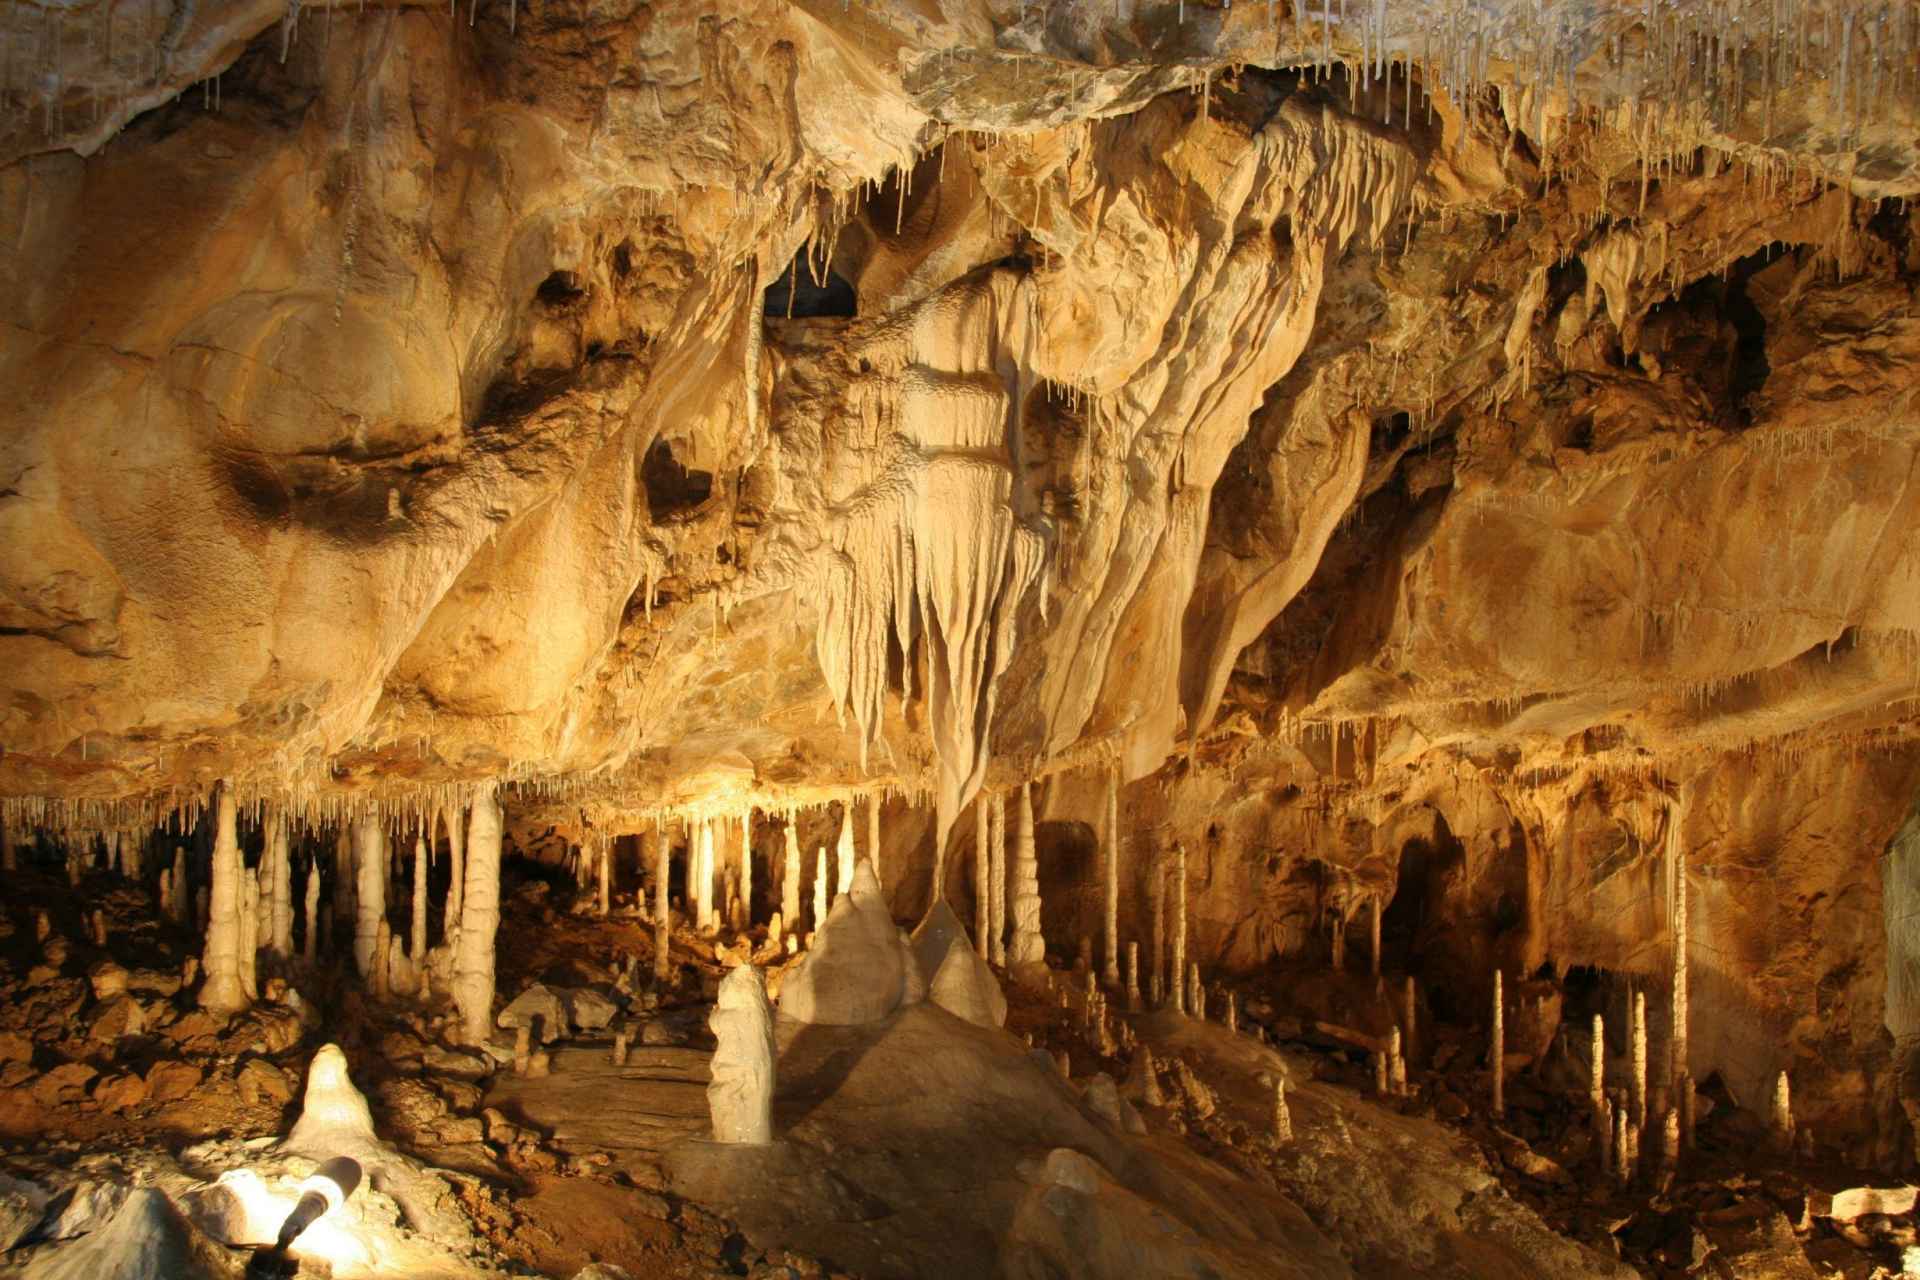 Jaskinia Jaworzycka (cz. Javoříčské jeskyně)